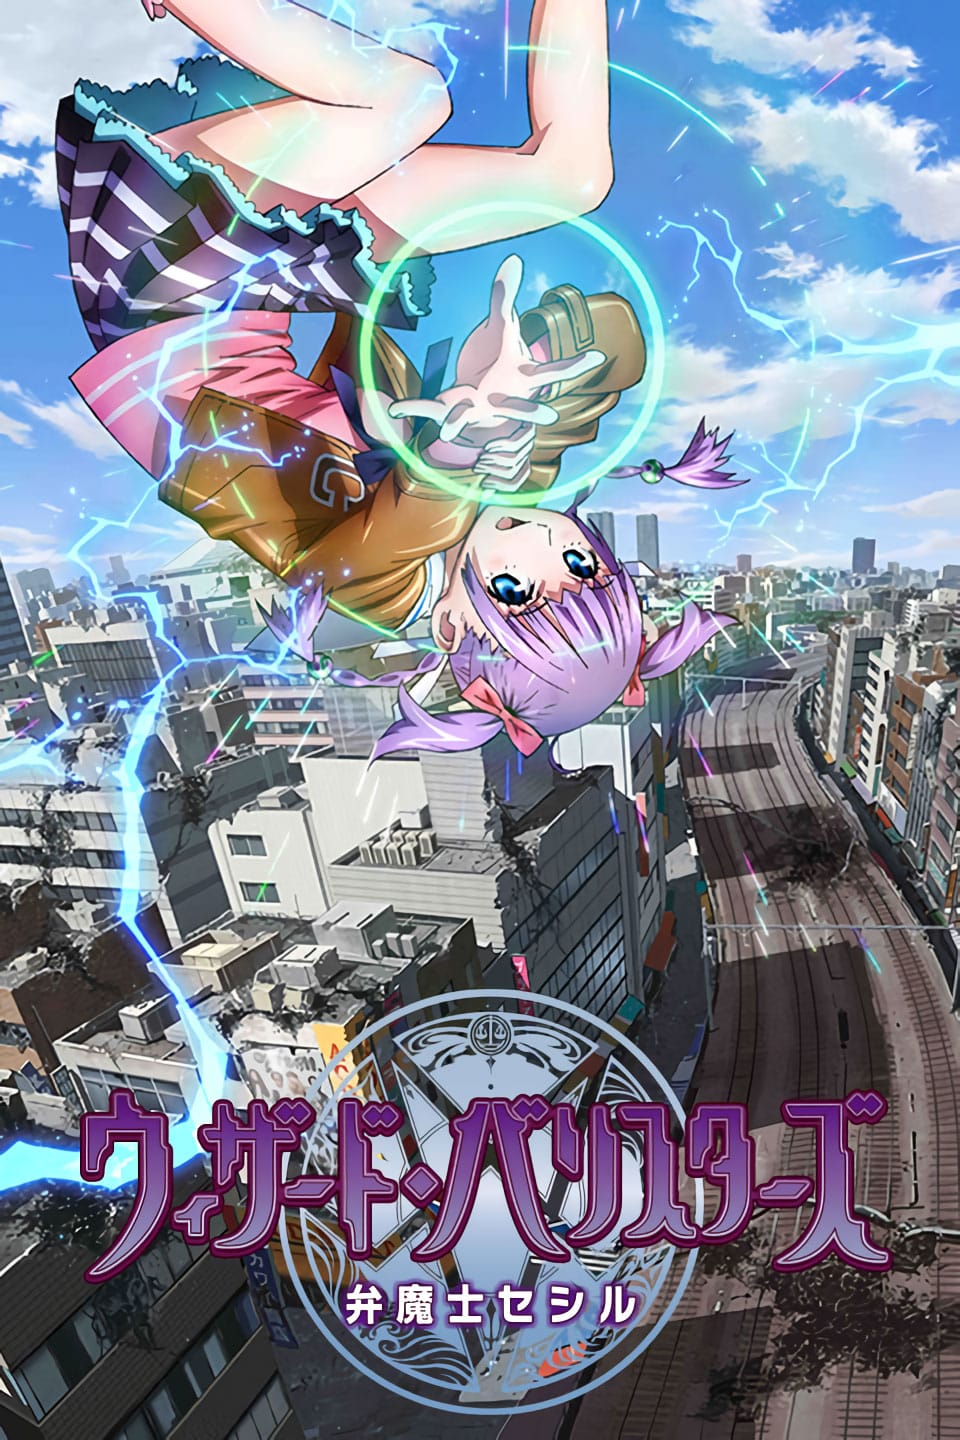 Wizard Barristers: Hechiceros: Barra De Abogados Llega A Anime Onegai Con Doblaje